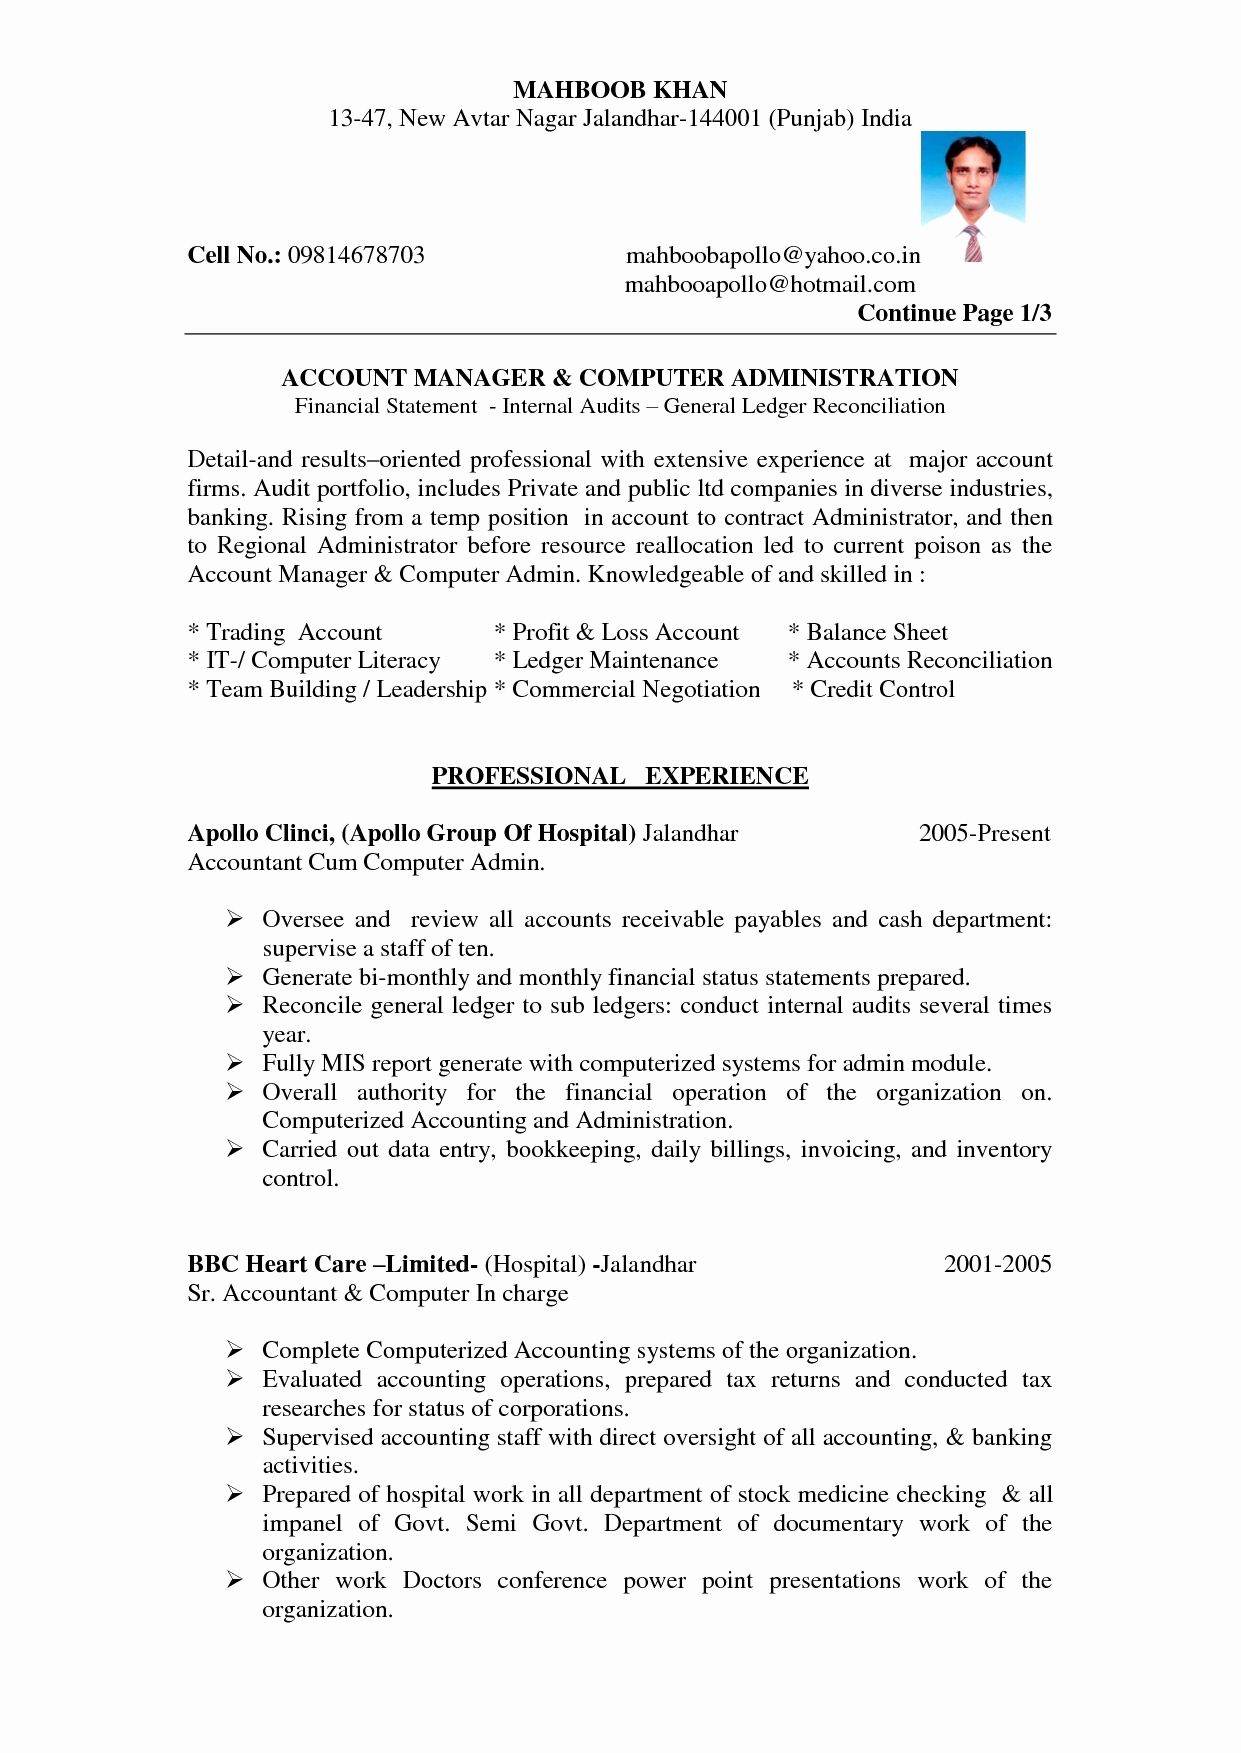 Resume Format Sheet 